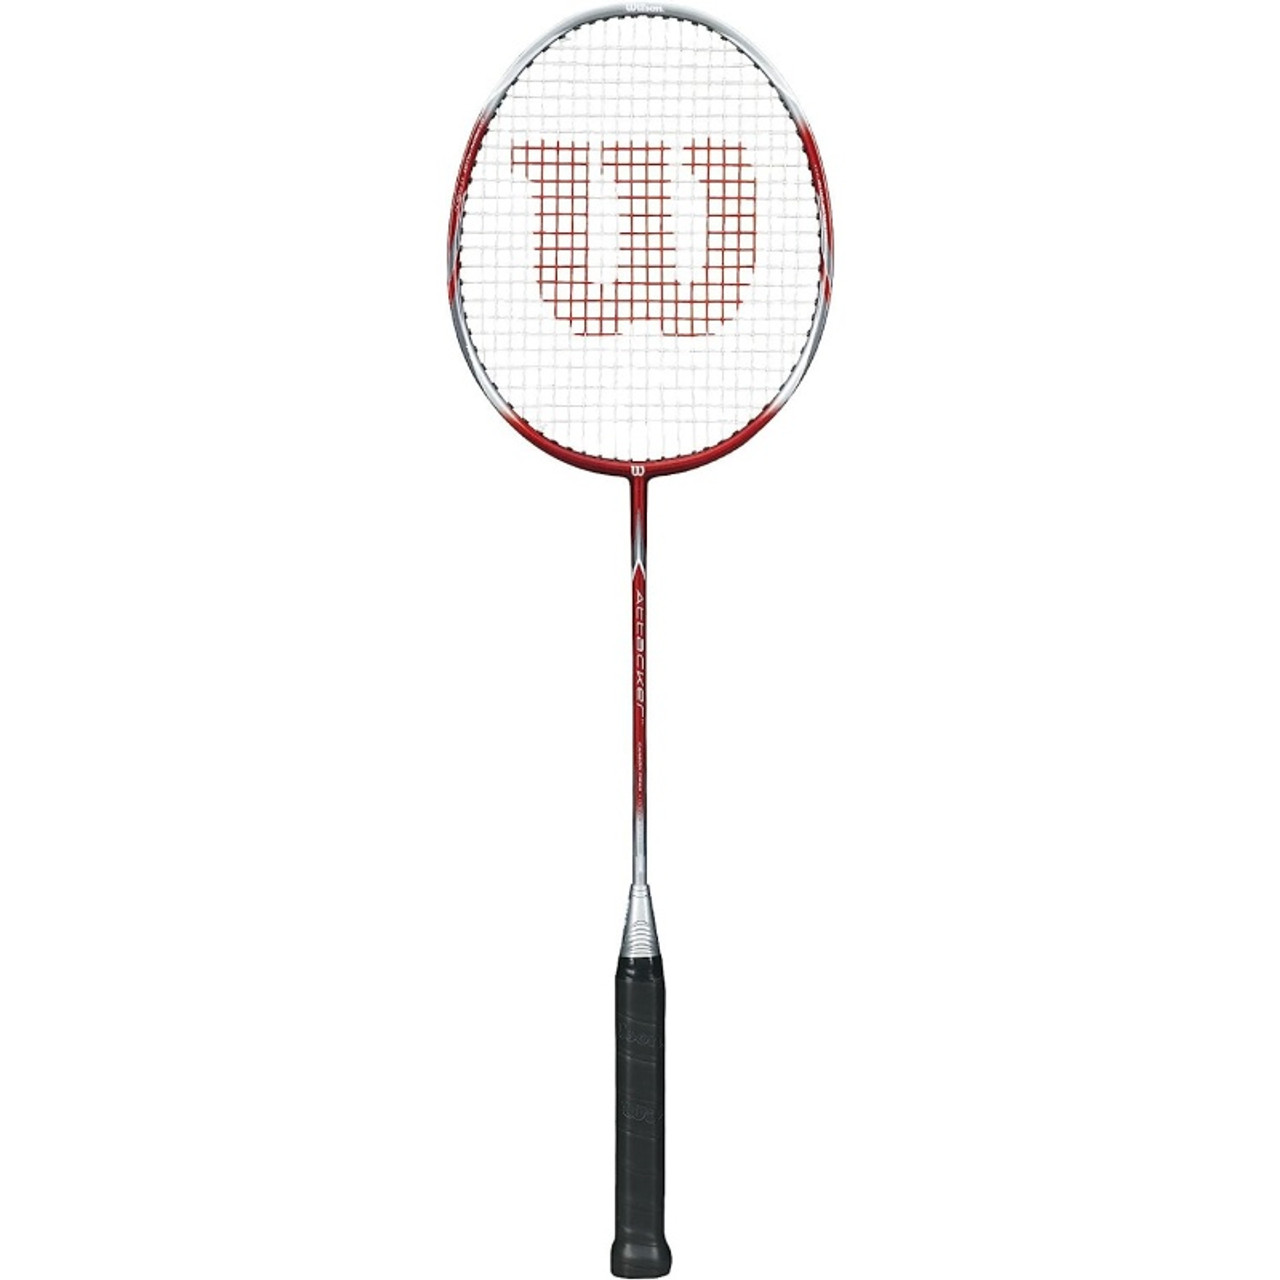 Wilson Attacker Badminton Racquet is a high quality beginner